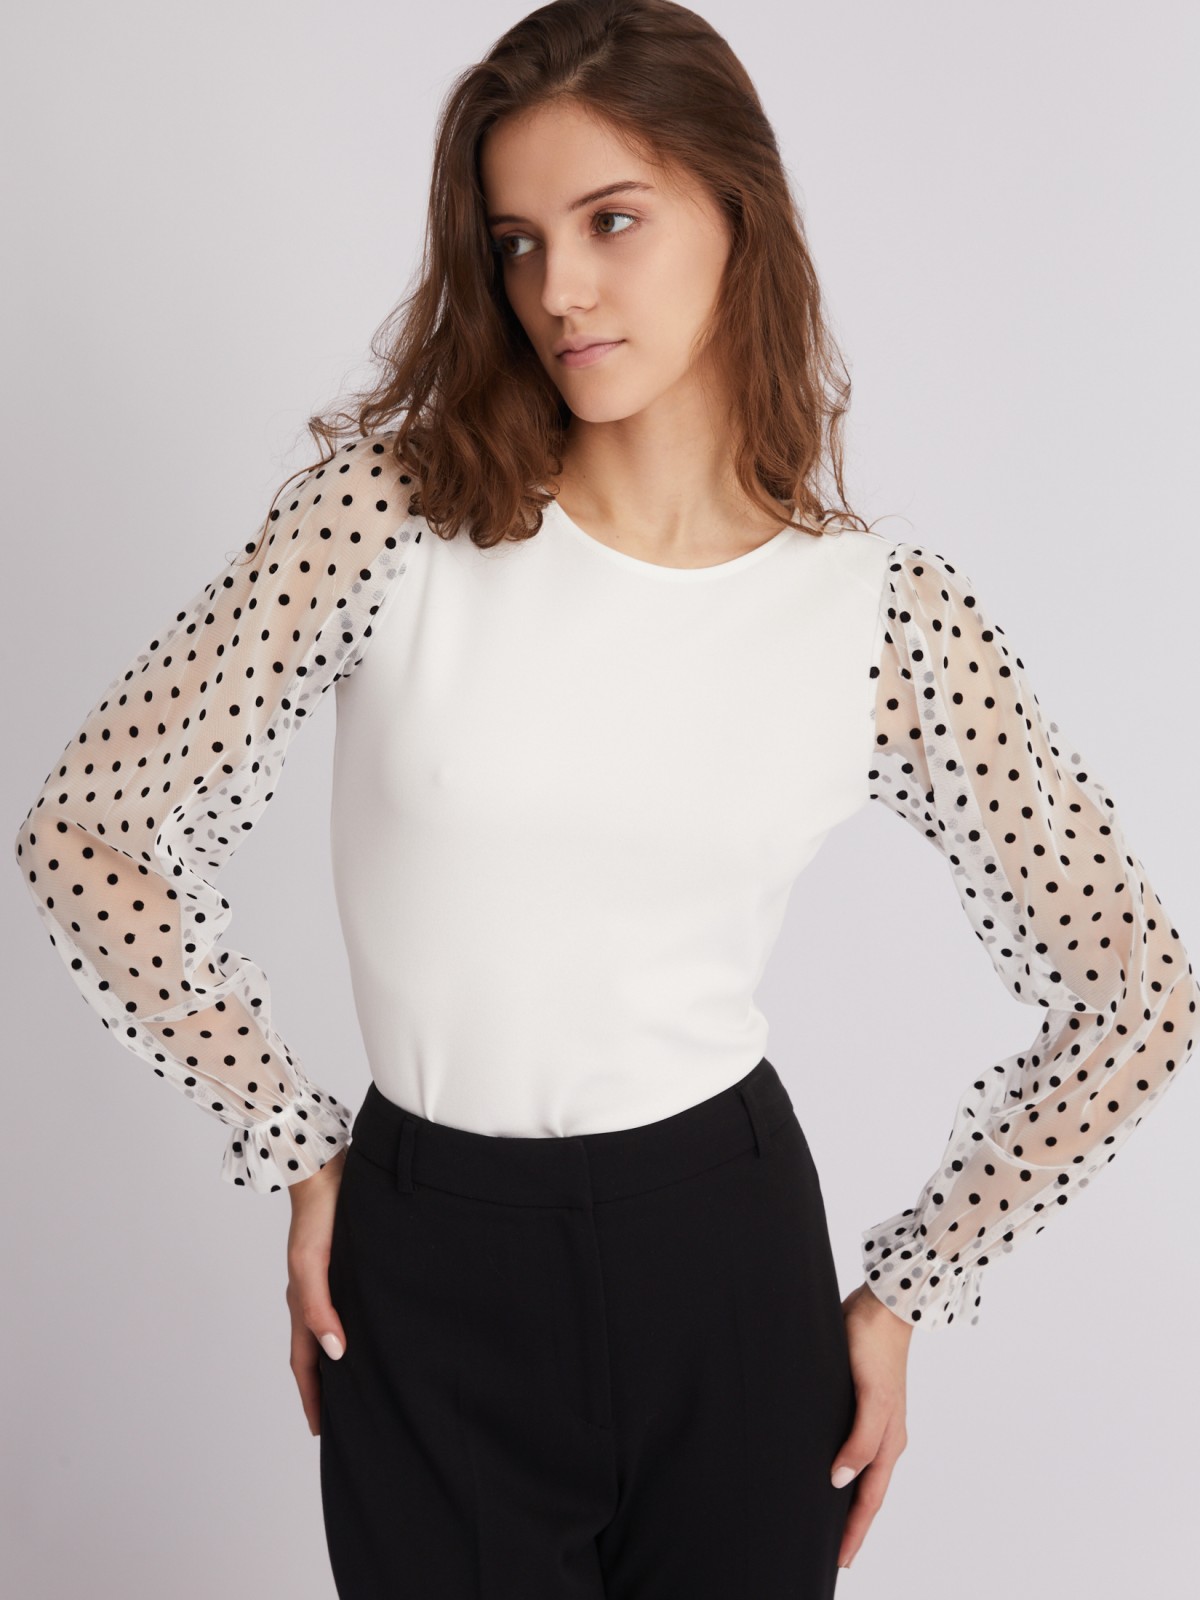 Топ-блузка с акцентными рукавами zolla 023311159203, цвет молоко, размер XS - фото 3